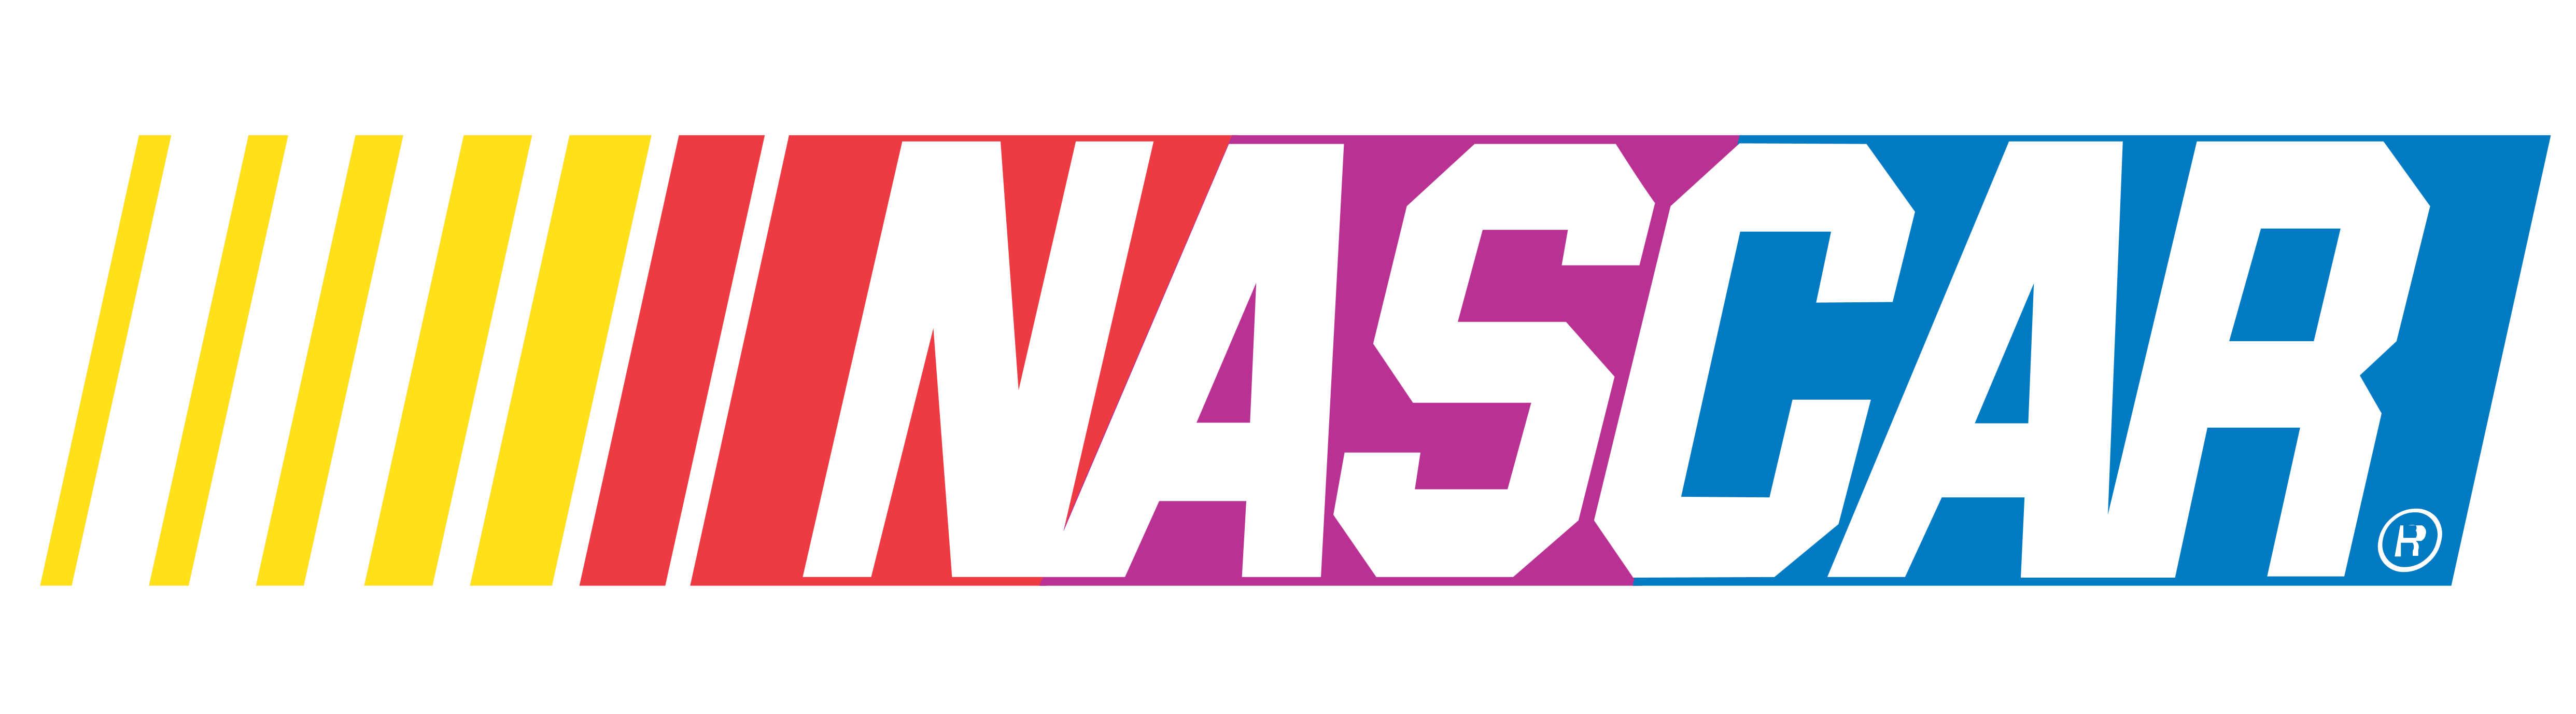 NASCAR Logo - NASCAR